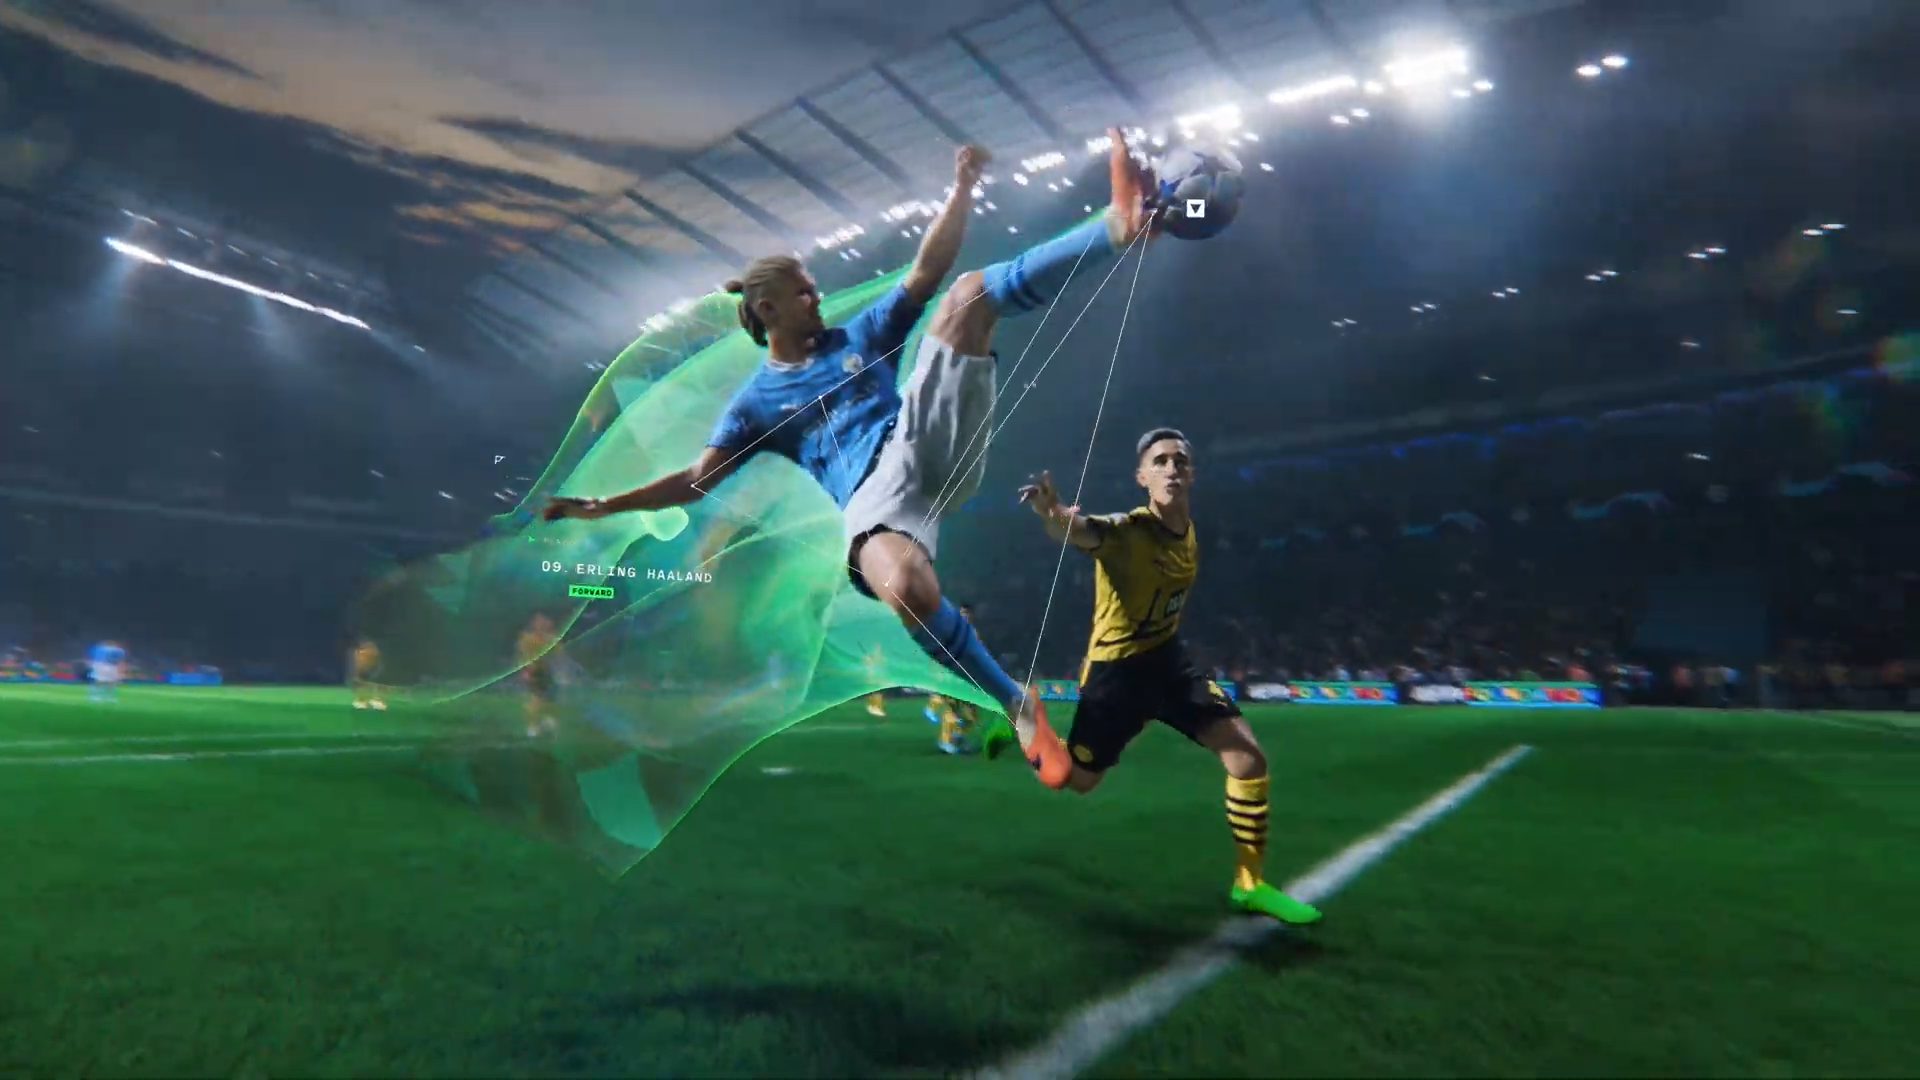 EA Sports FC 24 revela primeiro trailer e capa da versão Ultimate